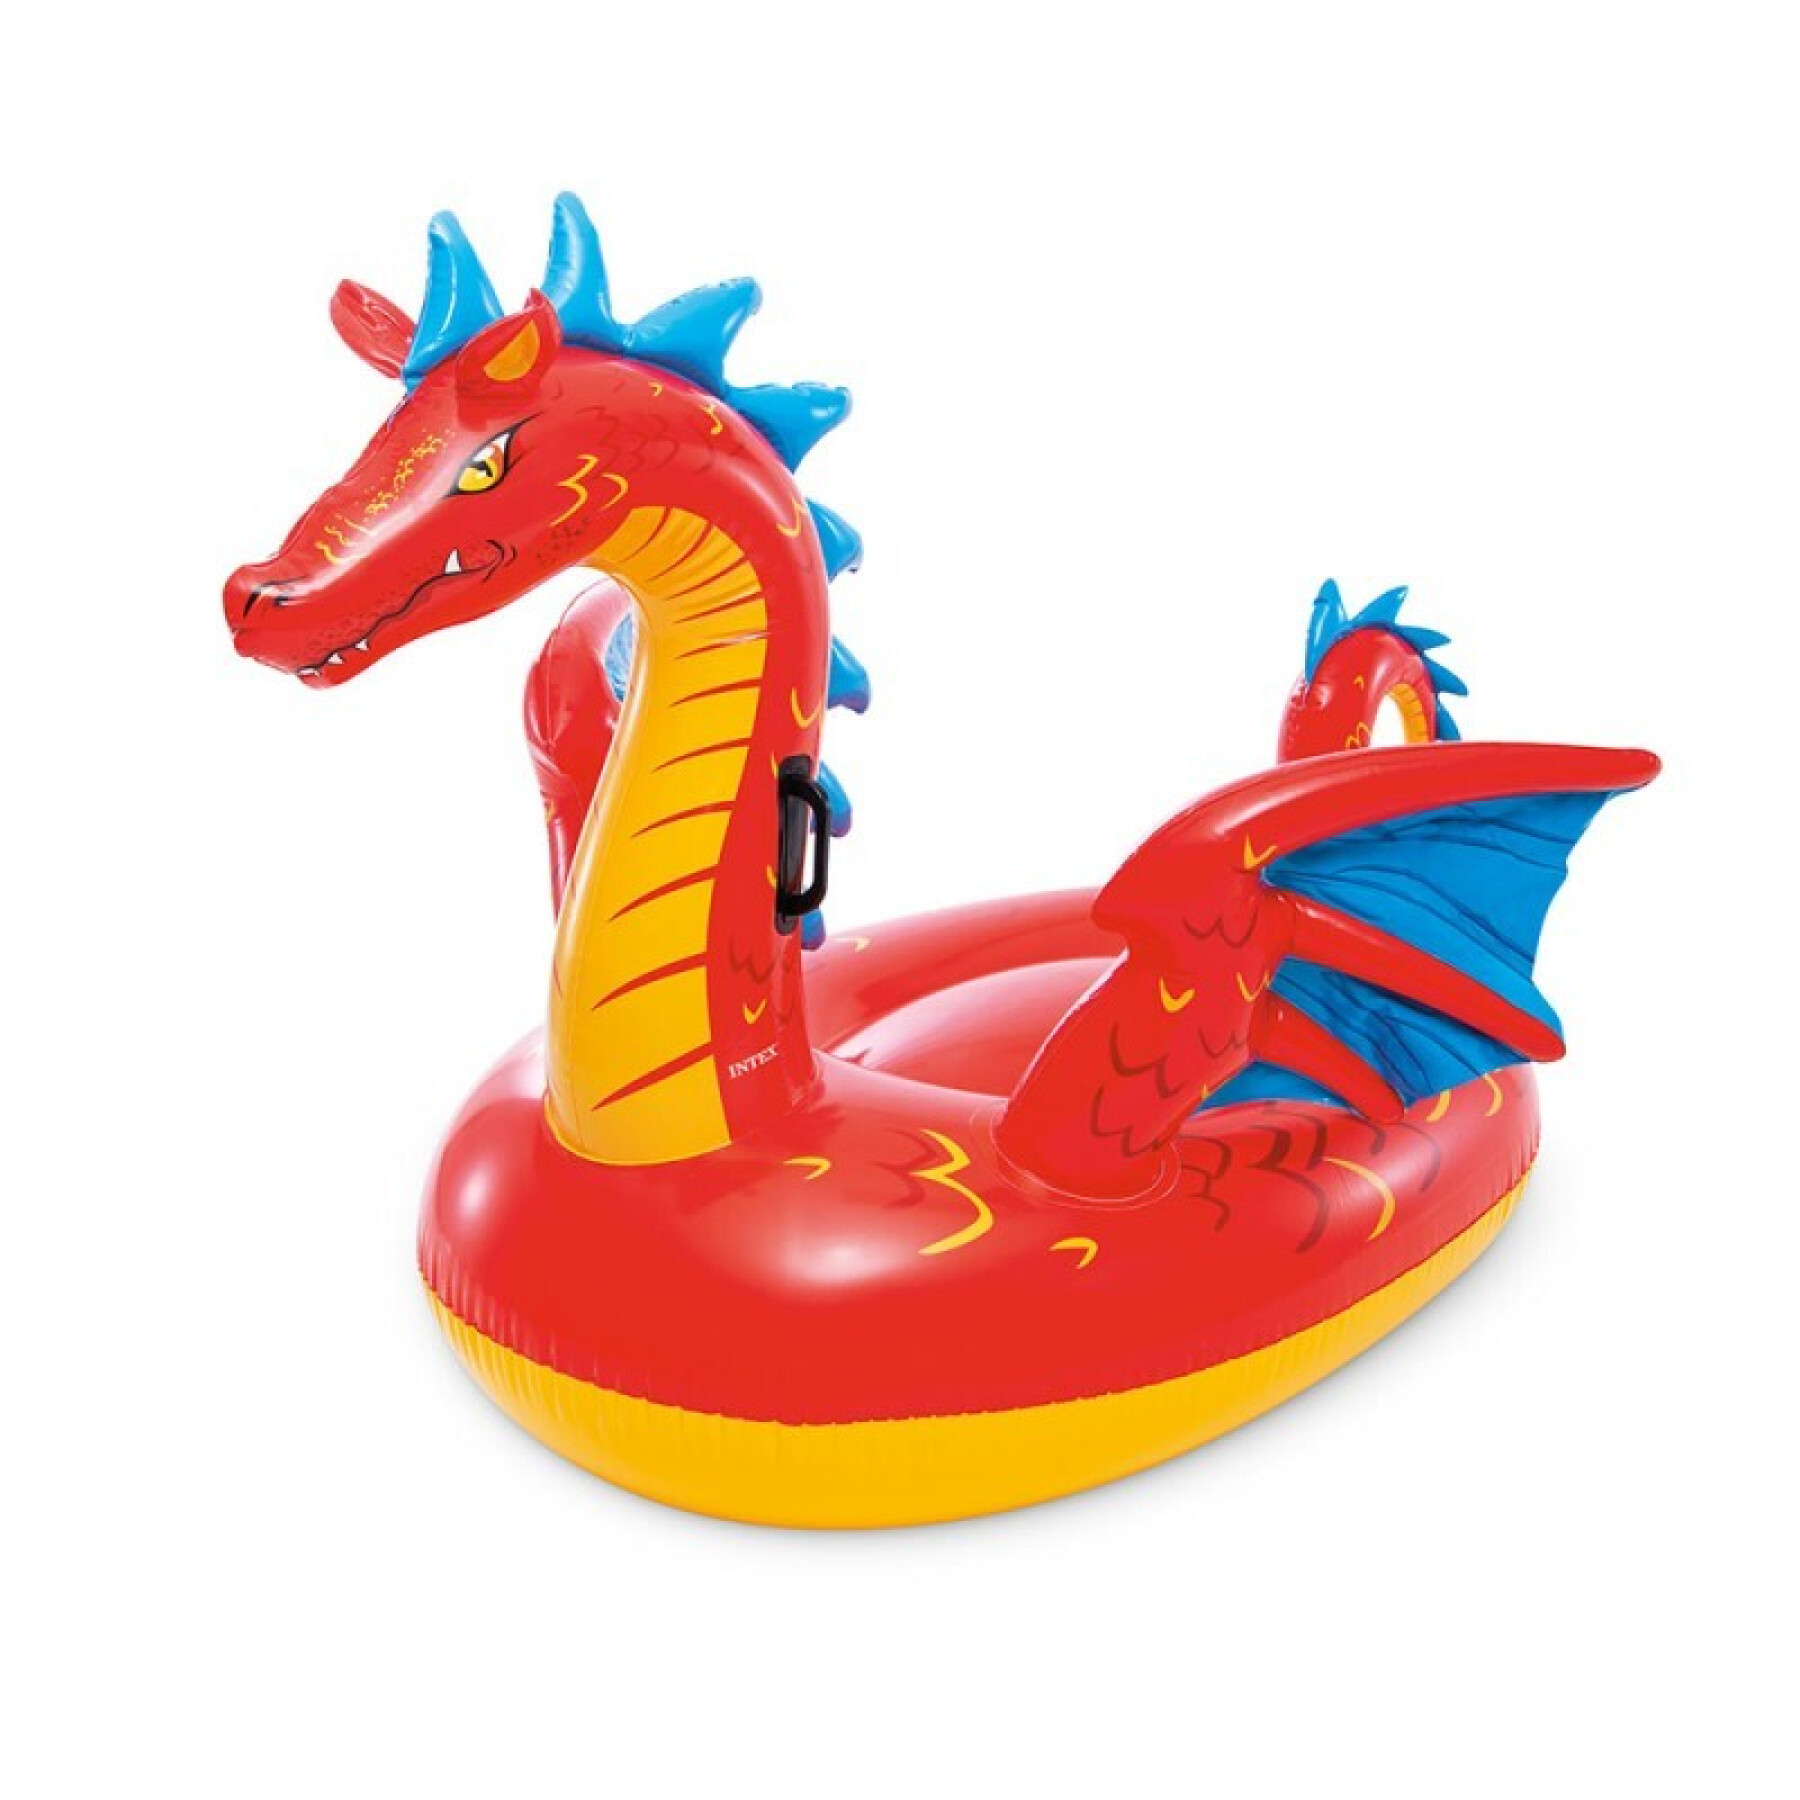 Mystical dragon riding buoy for children Intex